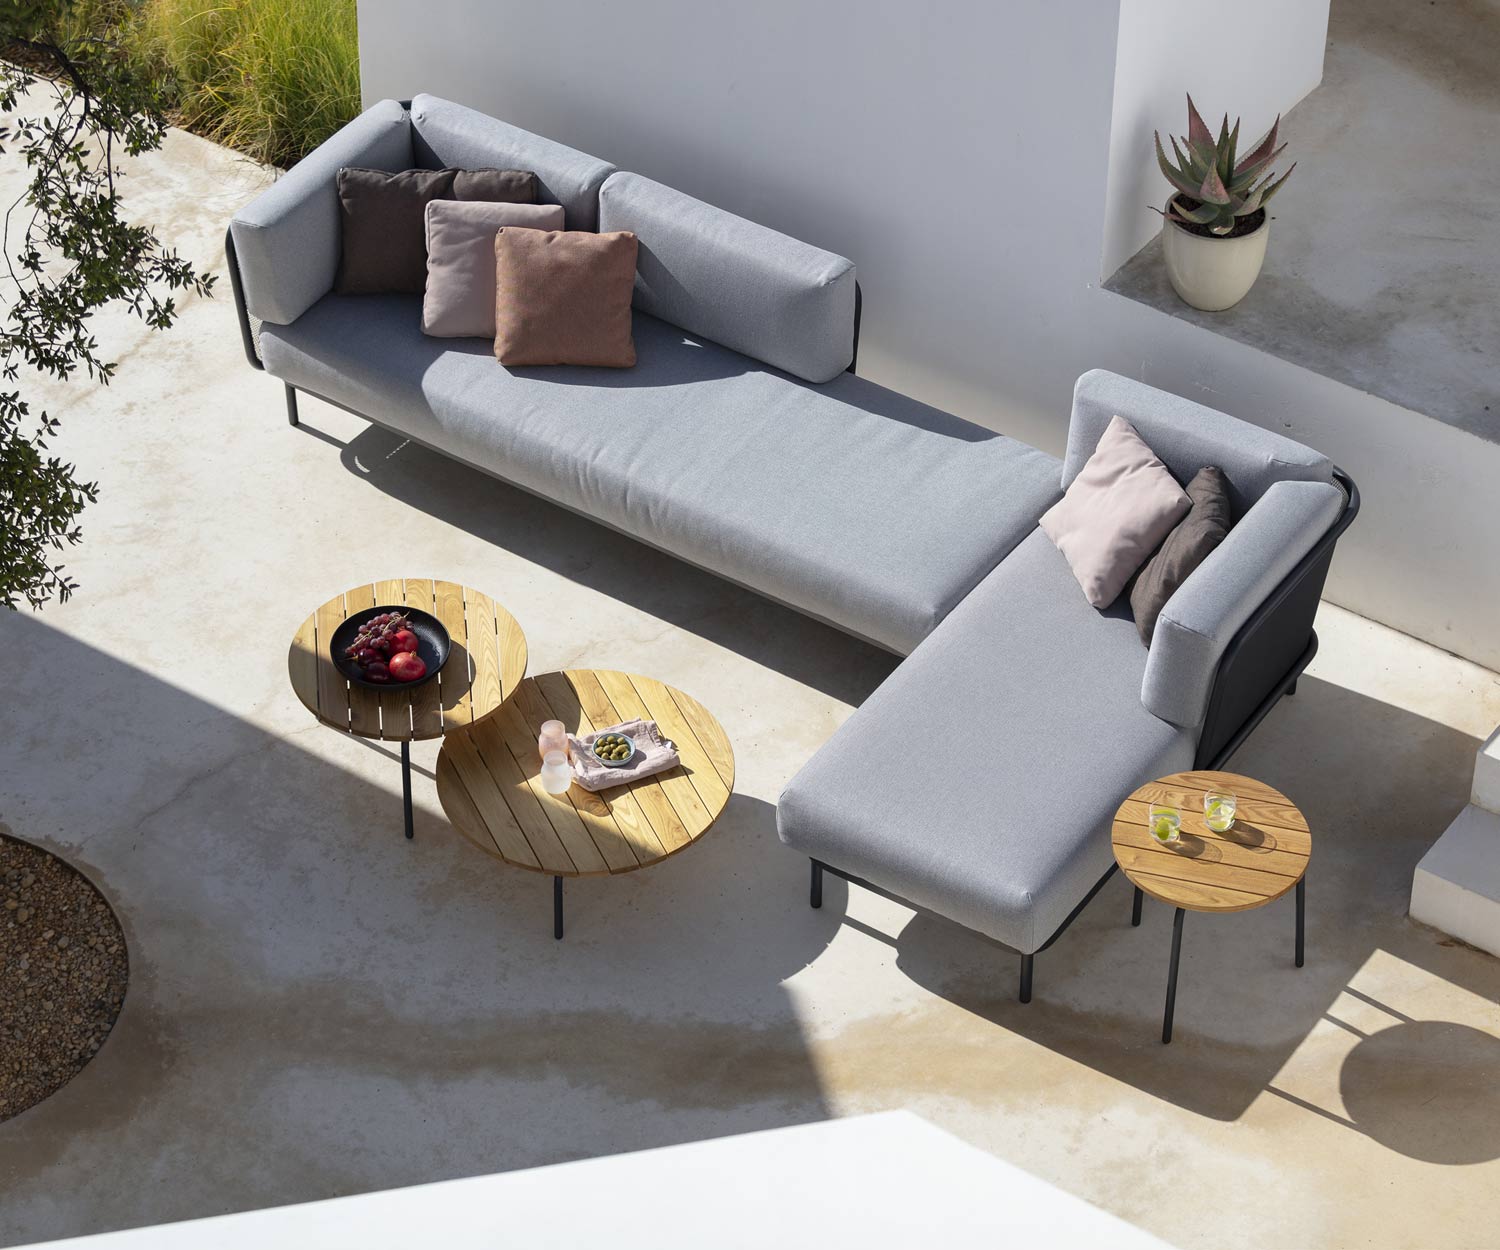 Table d'appoint Starling Design de haute qualité sur la terrasse avec le canapé de jardin Baza